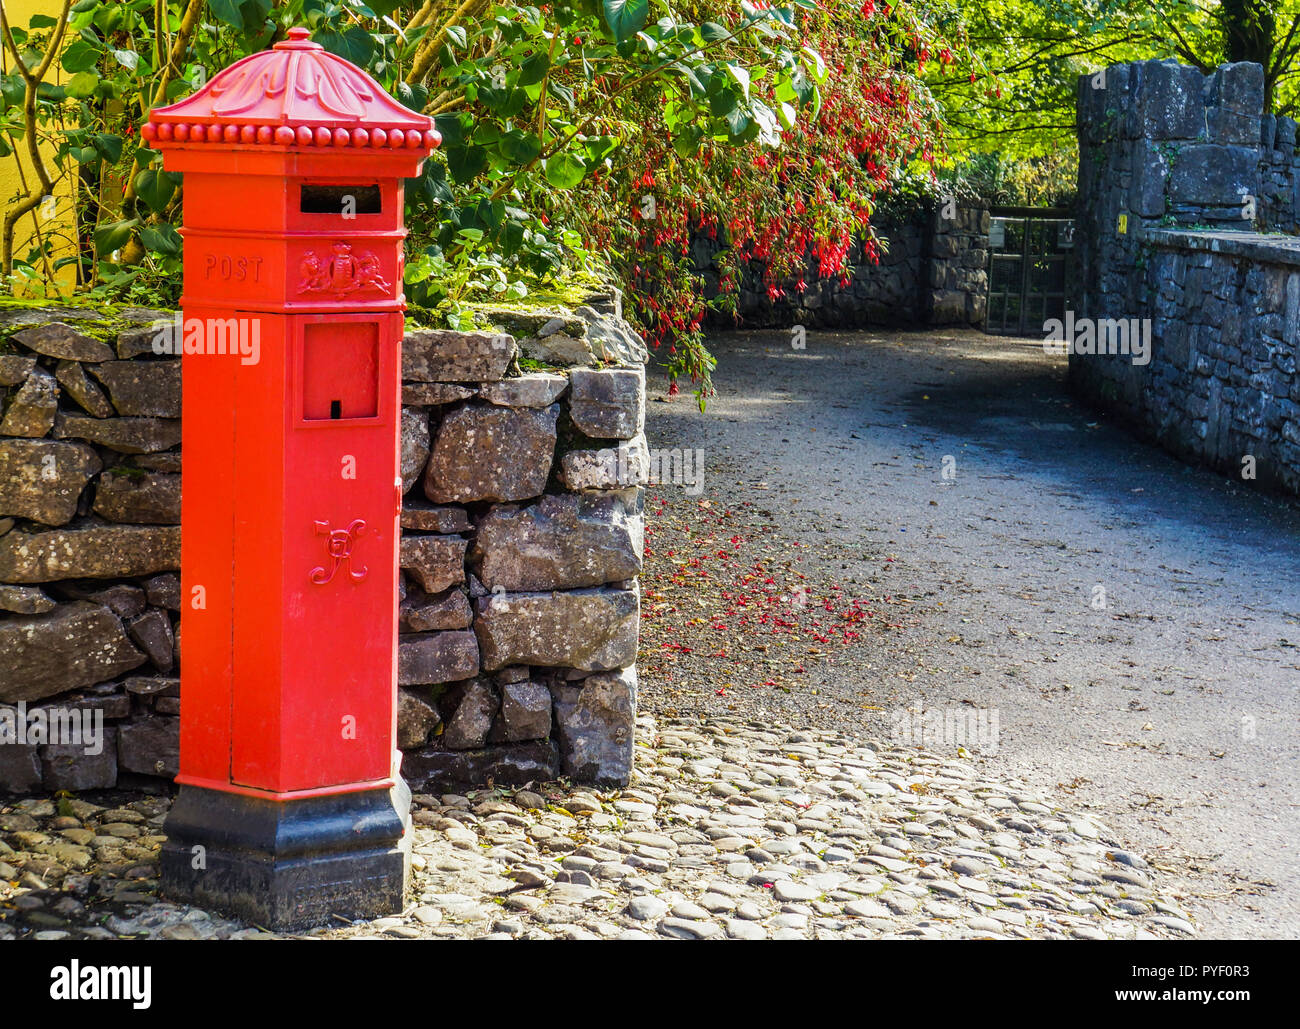 Rosso brillante irlandese casella di posta sulla strada del villaggio rivestiti con pareti in pietra con copertura di red fuchsias in fiore Foto Stock